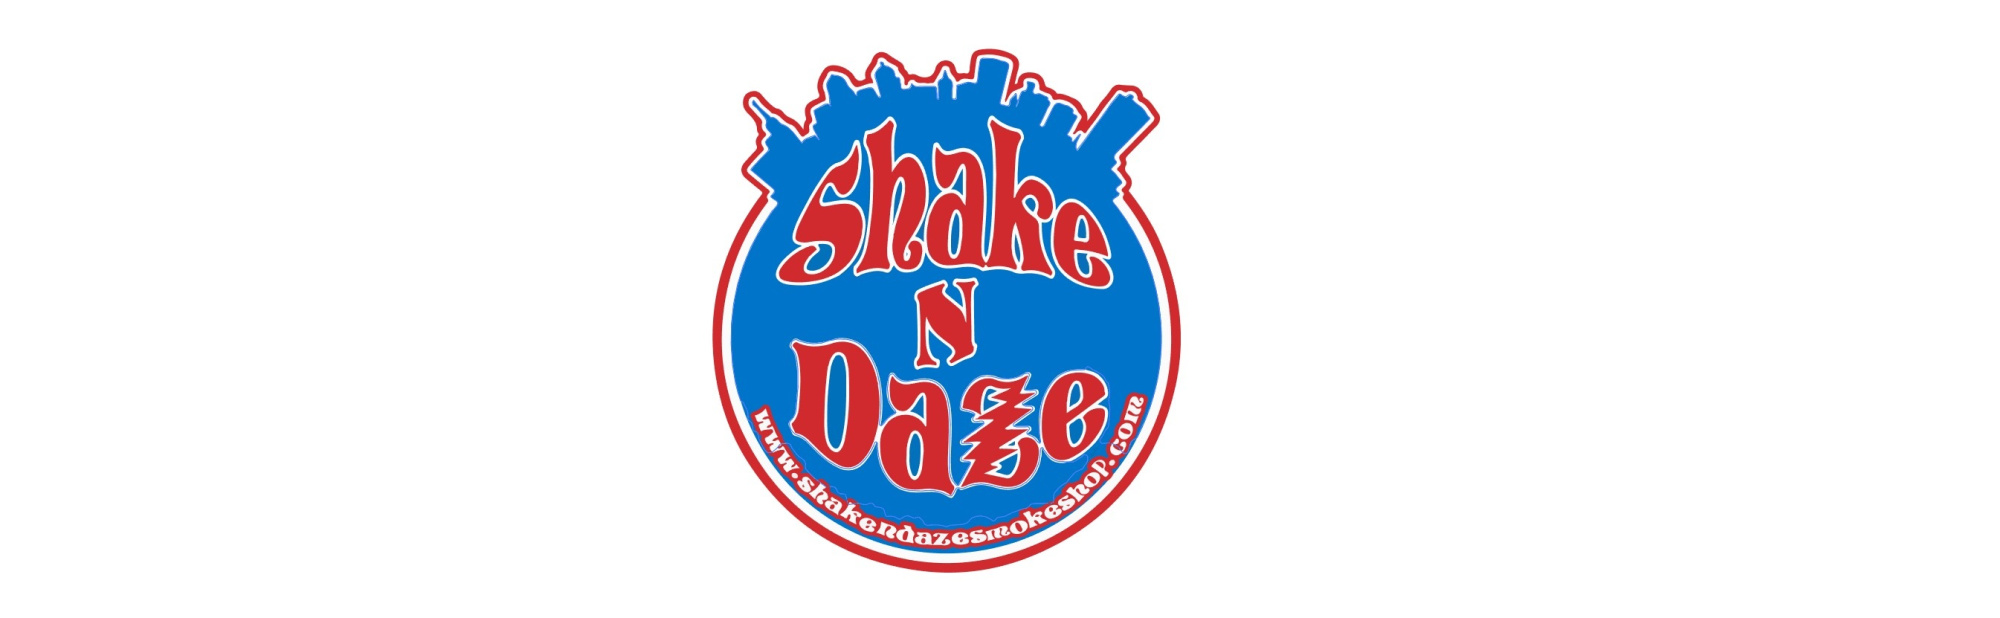 image of shake n daze in buffalo ny